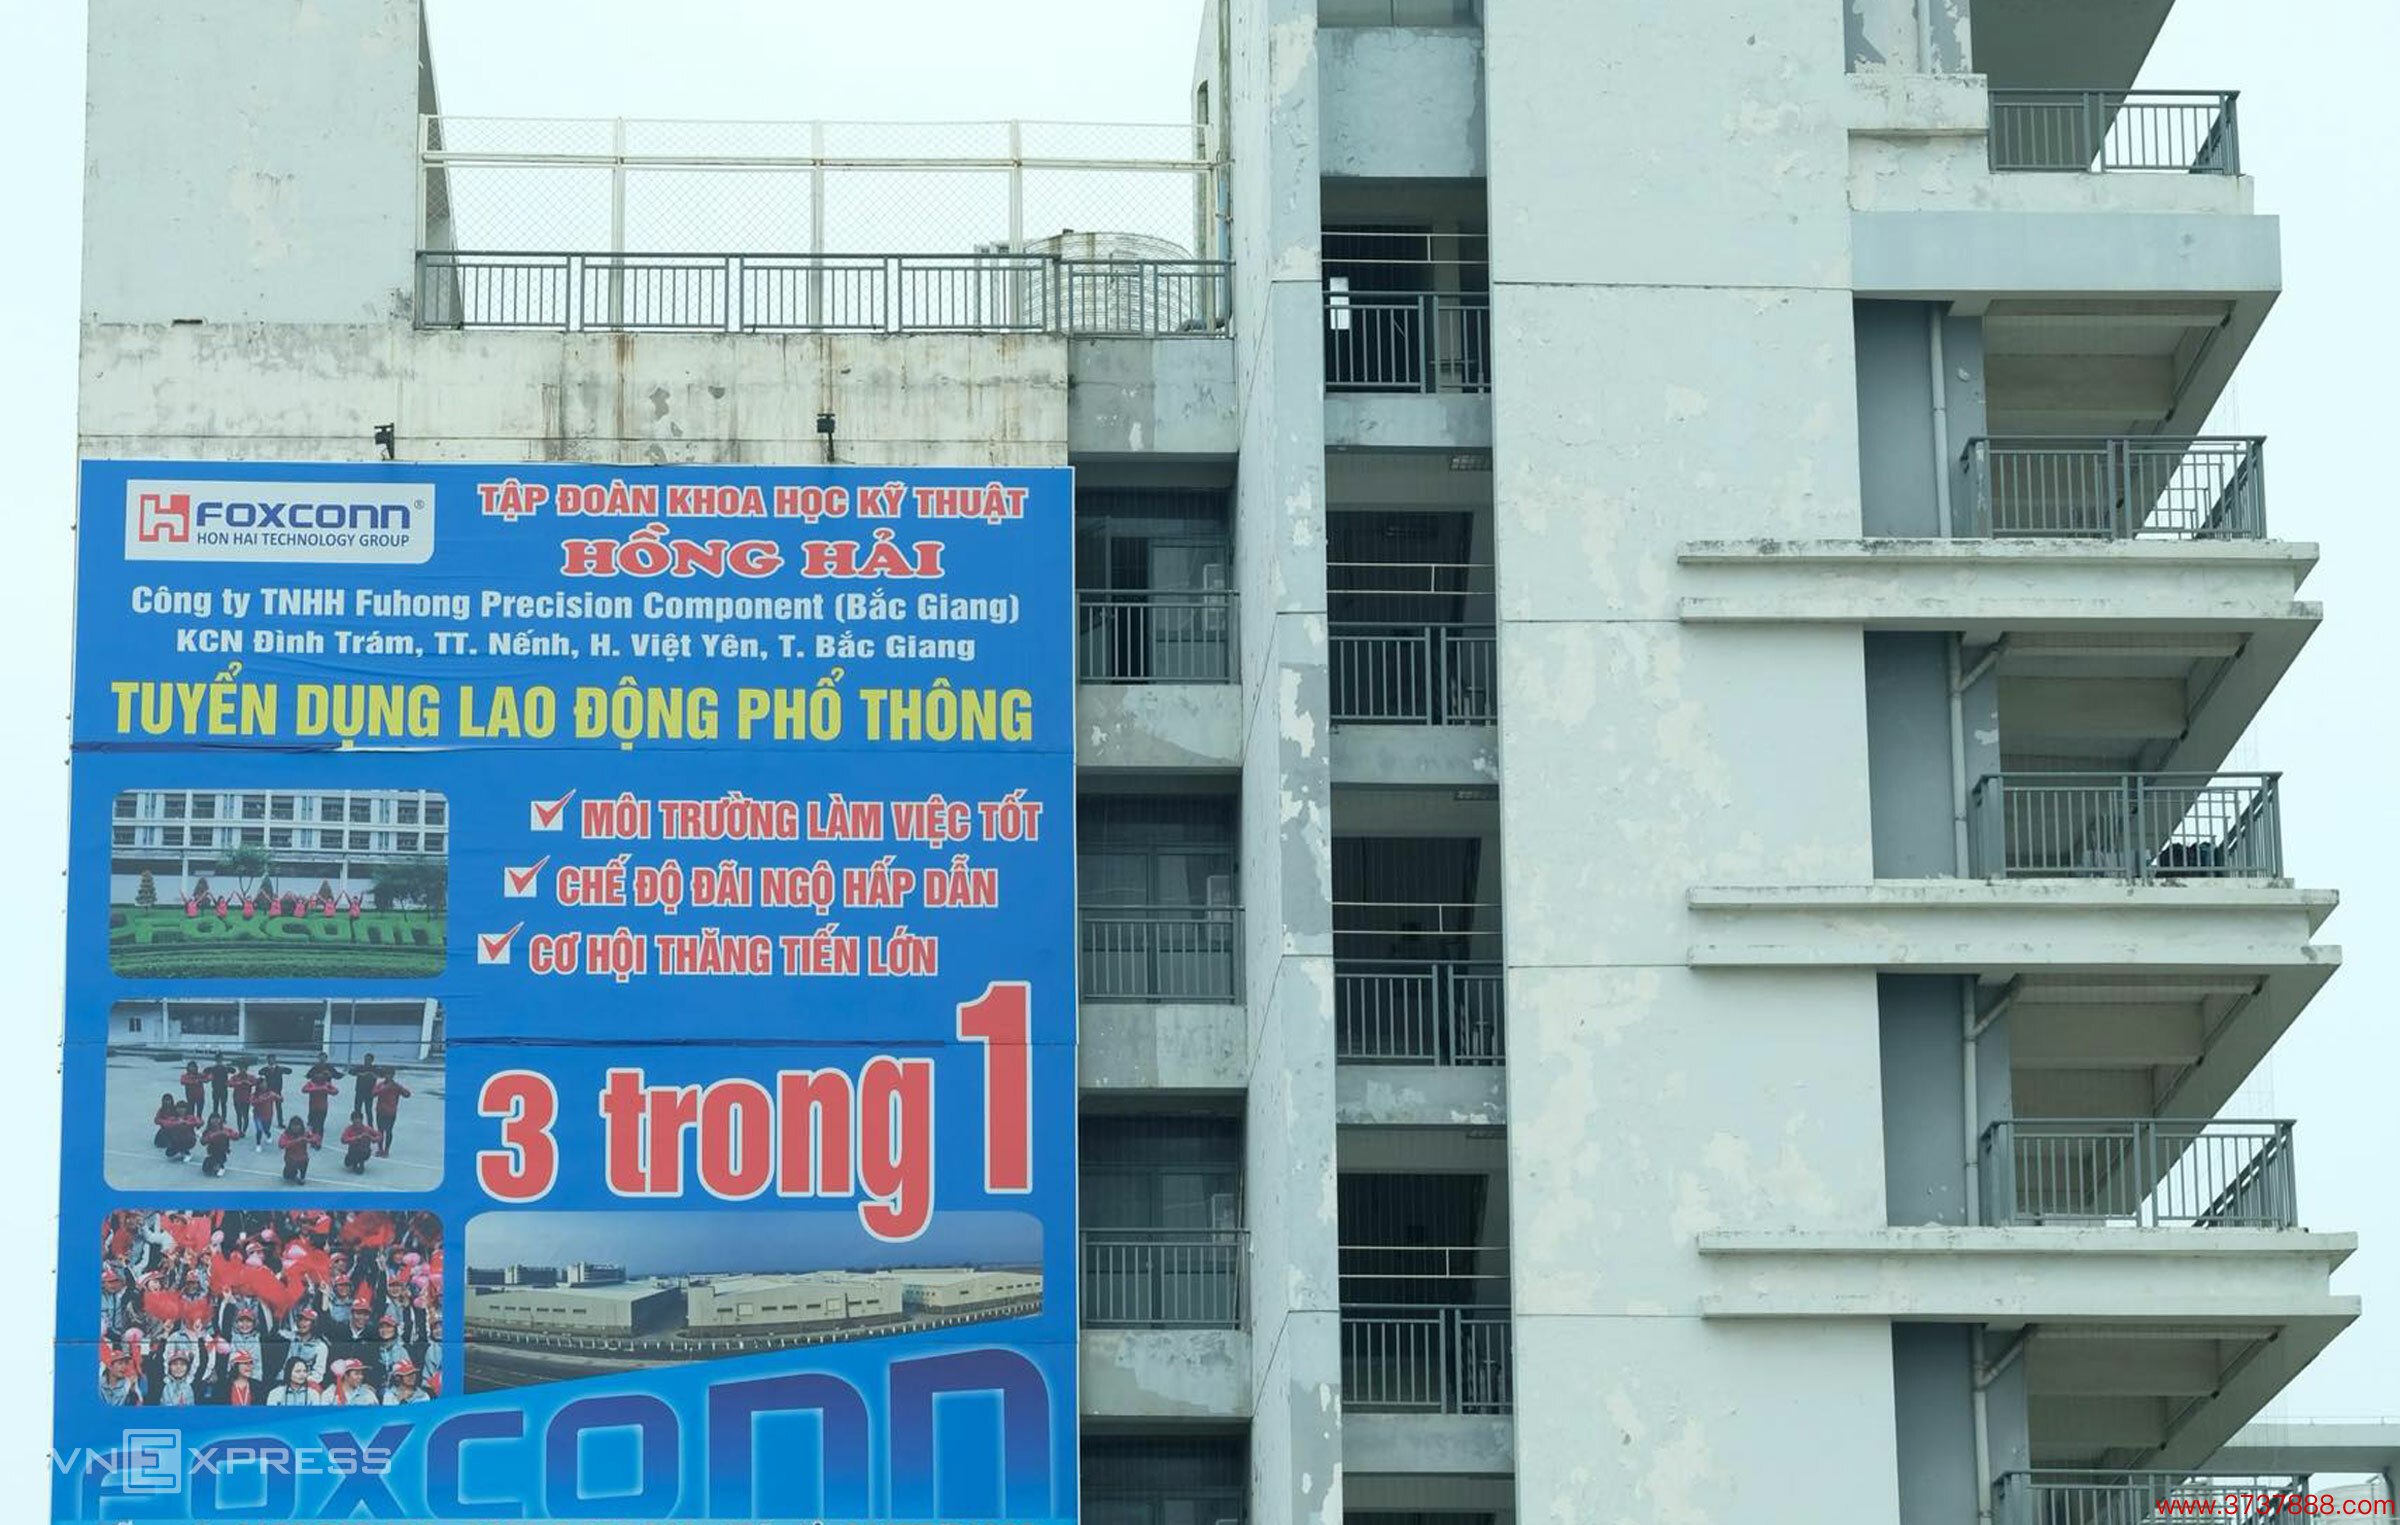 Bảng tuyển dụng cỡ lớn của Foxconn treo trên một tòa nhà cao tầng ở Bắc Giang， đầu năm 2023. Ảnh: Hồng Chiêu123 zô